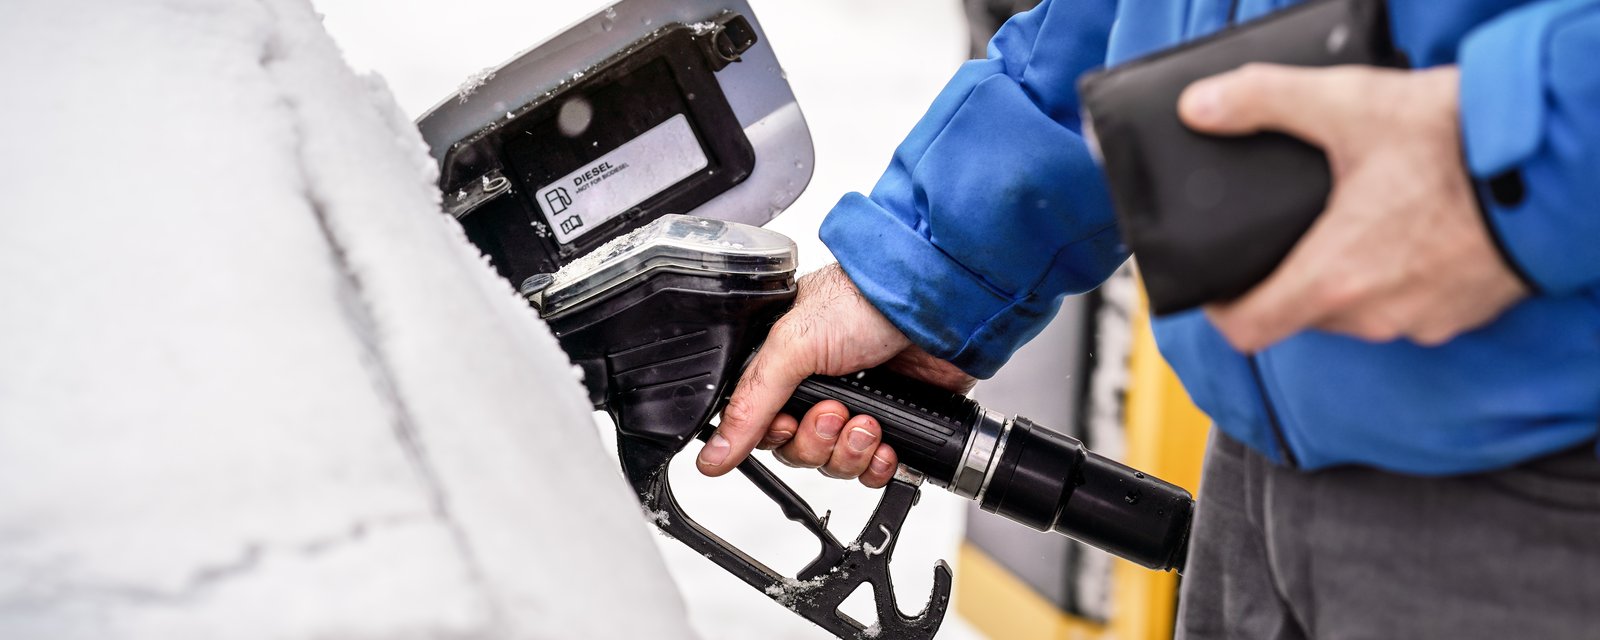 Les résidents de ces 4 villes du Québec recevront un rabais d'essence